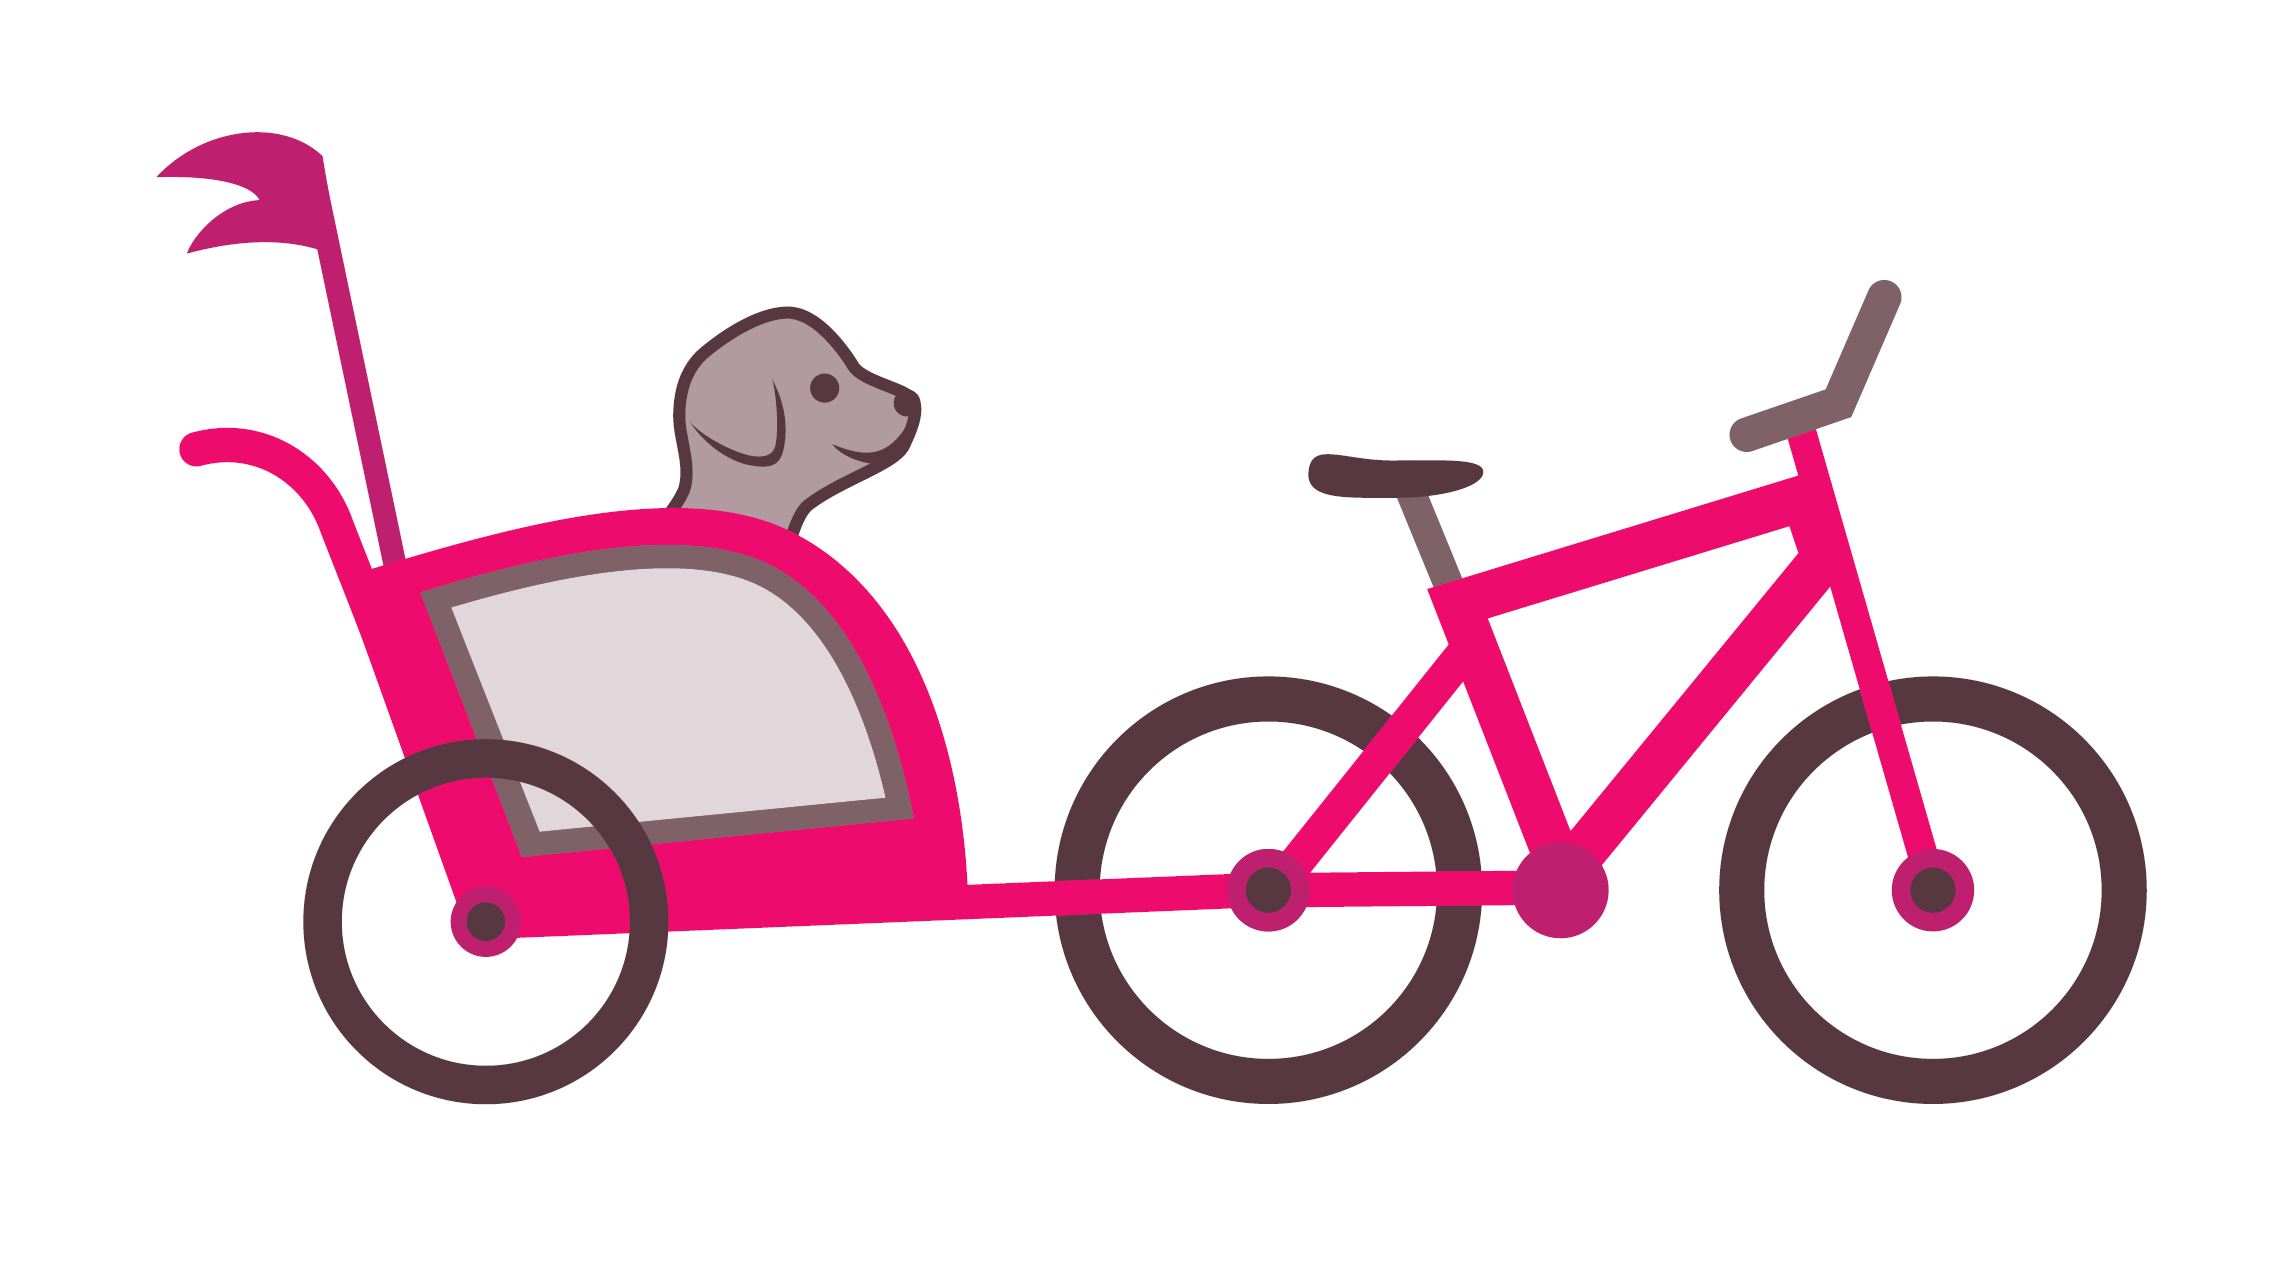 4 conseils pour conduire une remorque vélo avec un chien